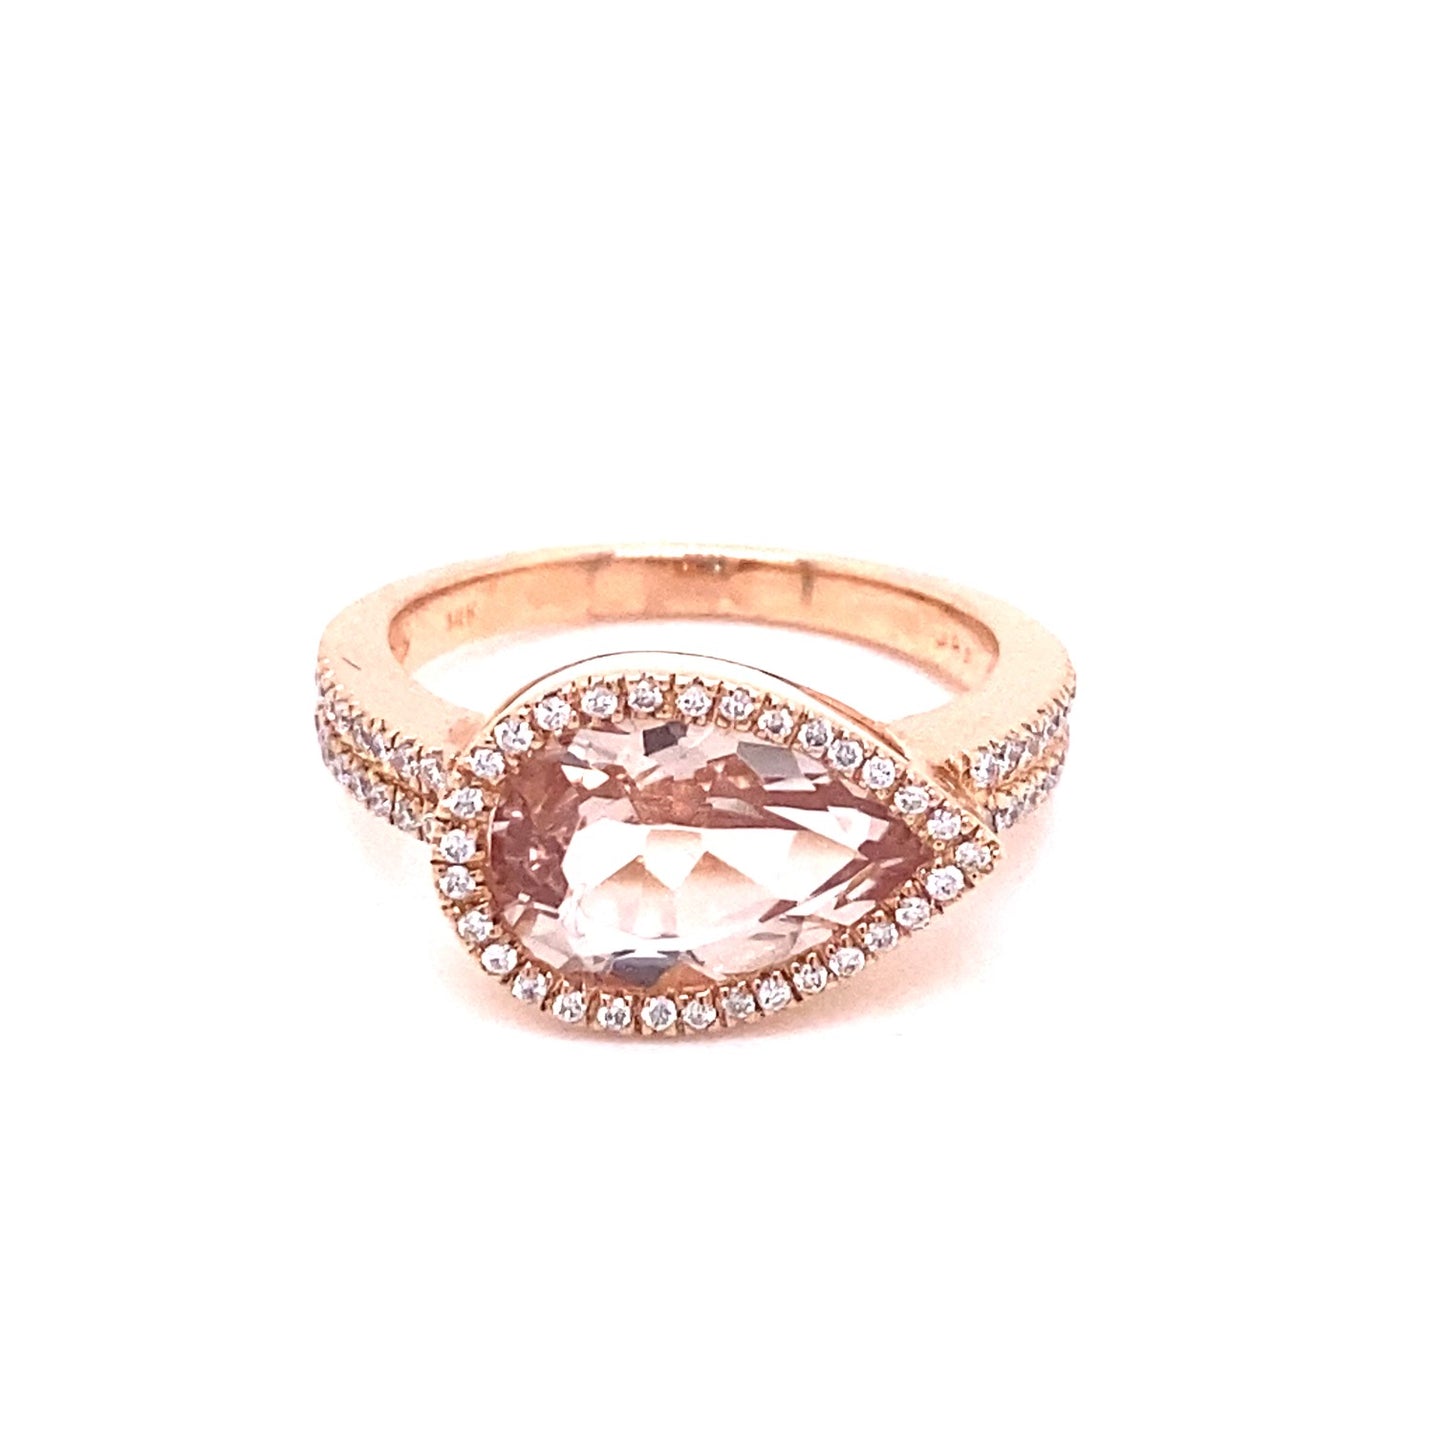 Morganite and Diamond Fashion Ring